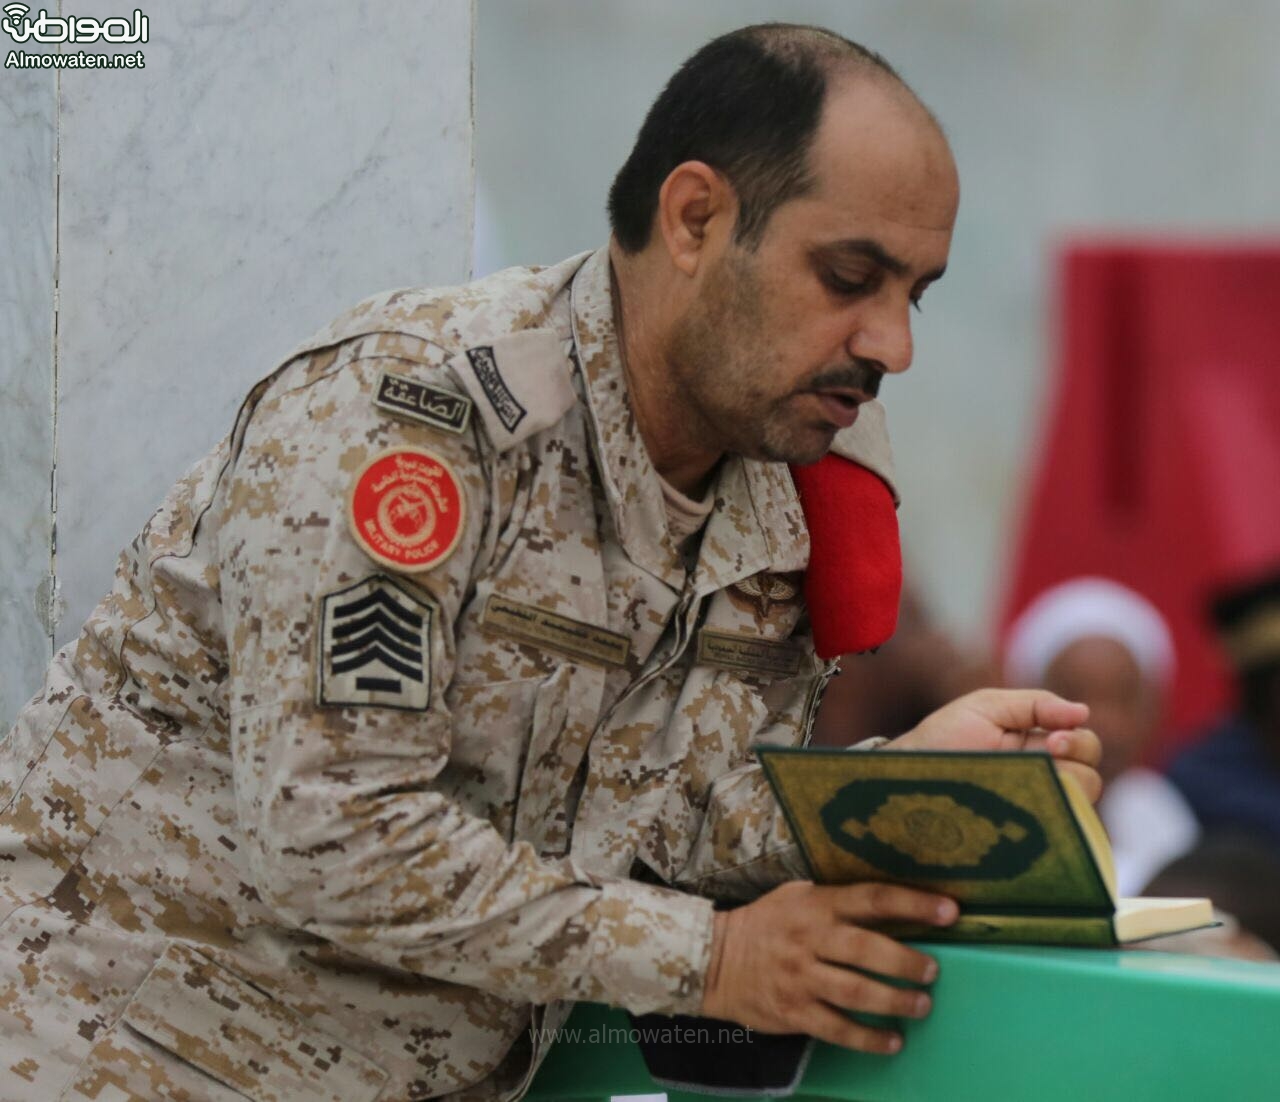 عسكري يستغل وقت راحته بقراءة القرآن في المسجد الحرام